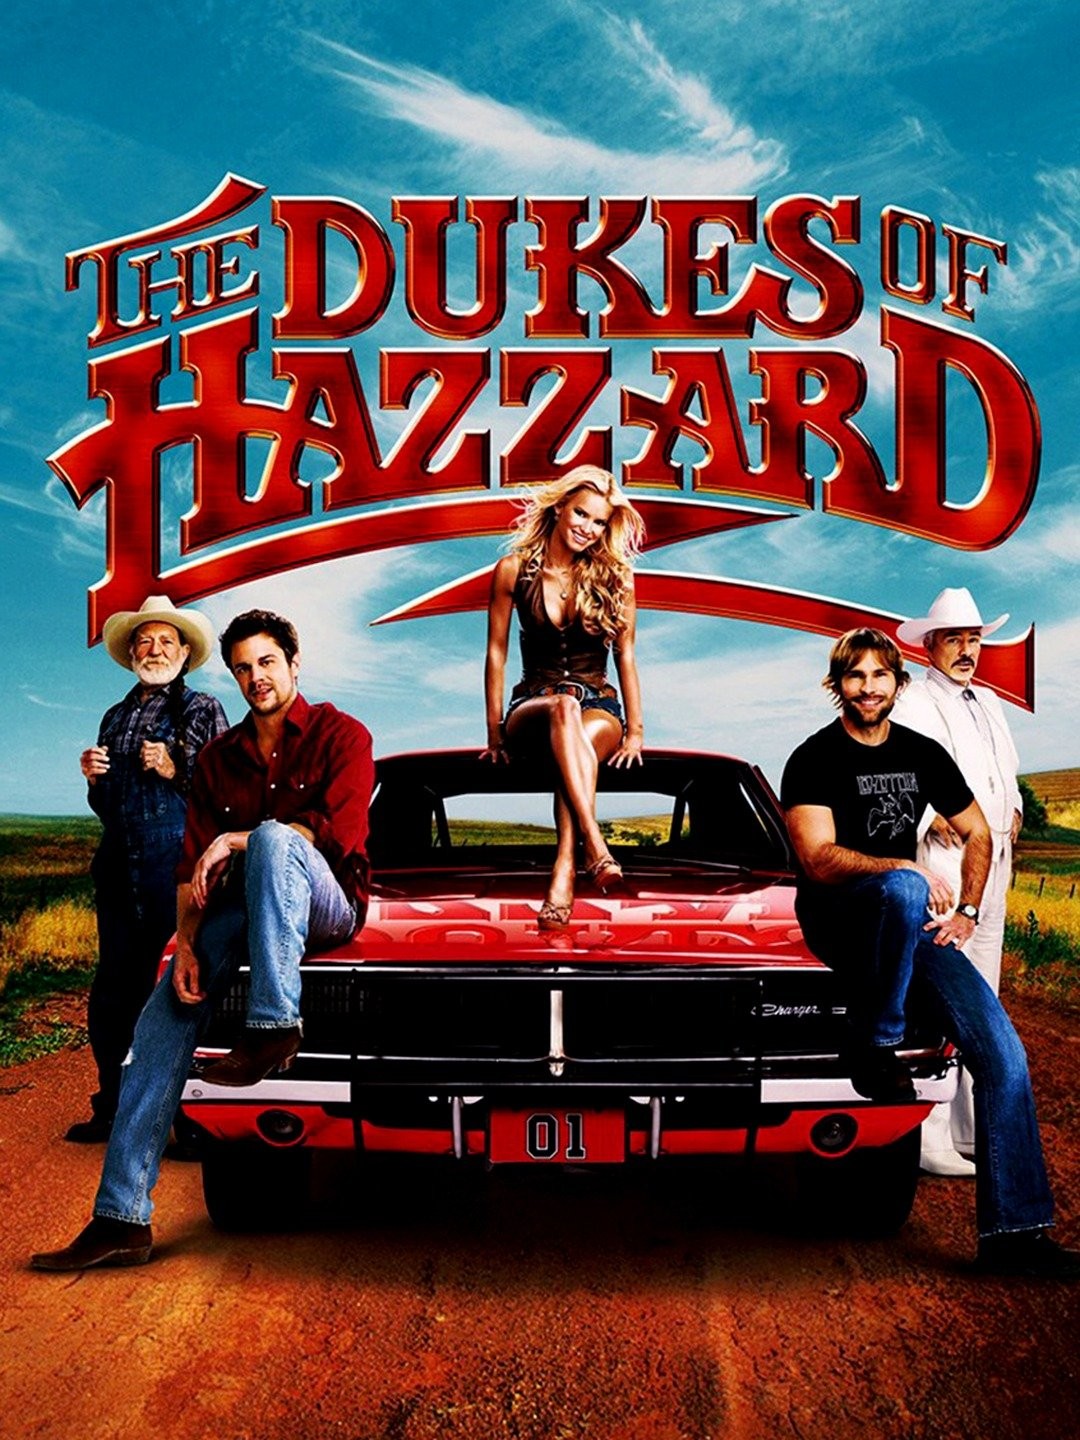 Hazzard Porn Parody - The Dukes of Hazzard | Rotten Tomatoes